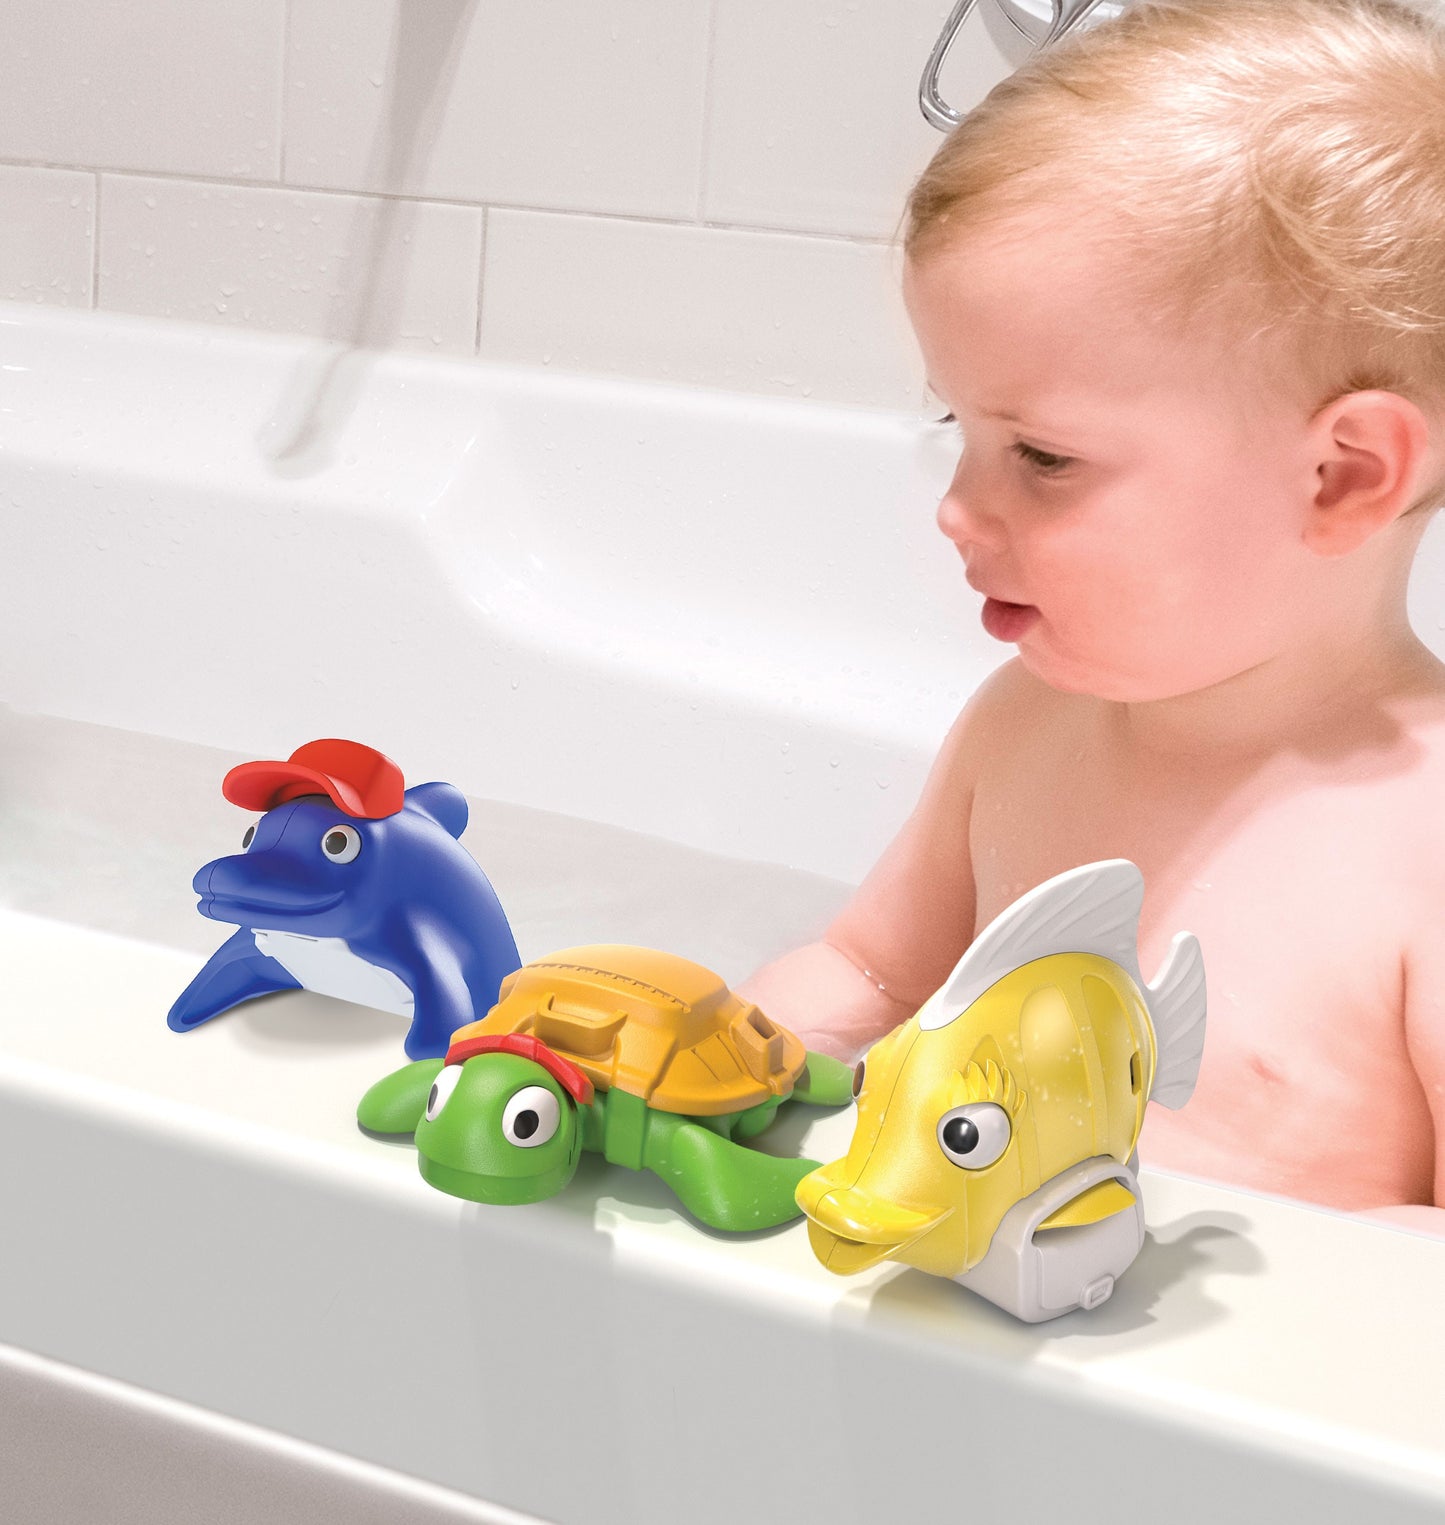 Toys - Reef express bath toy set